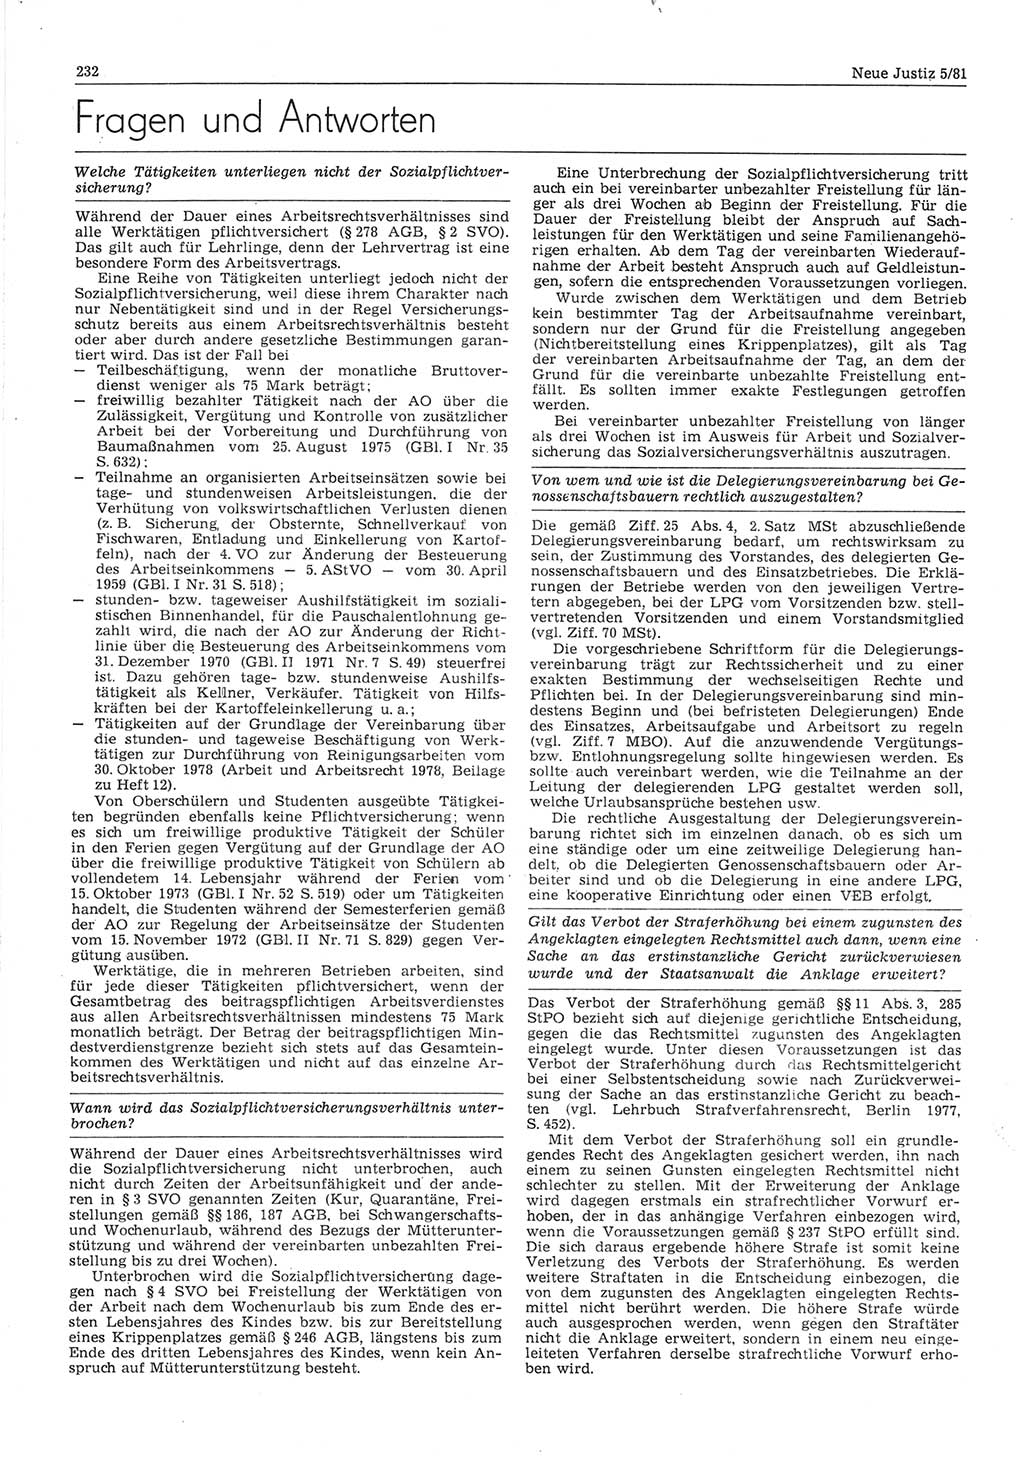 Neue Justiz (NJ), Zeitschrift für sozialistisches Recht und Gesetzlichkeit [Deutsche Demokratische Republik (DDR)], 35. Jahrgang 1981, Seite 232 (NJ DDR 1981, S. 232)